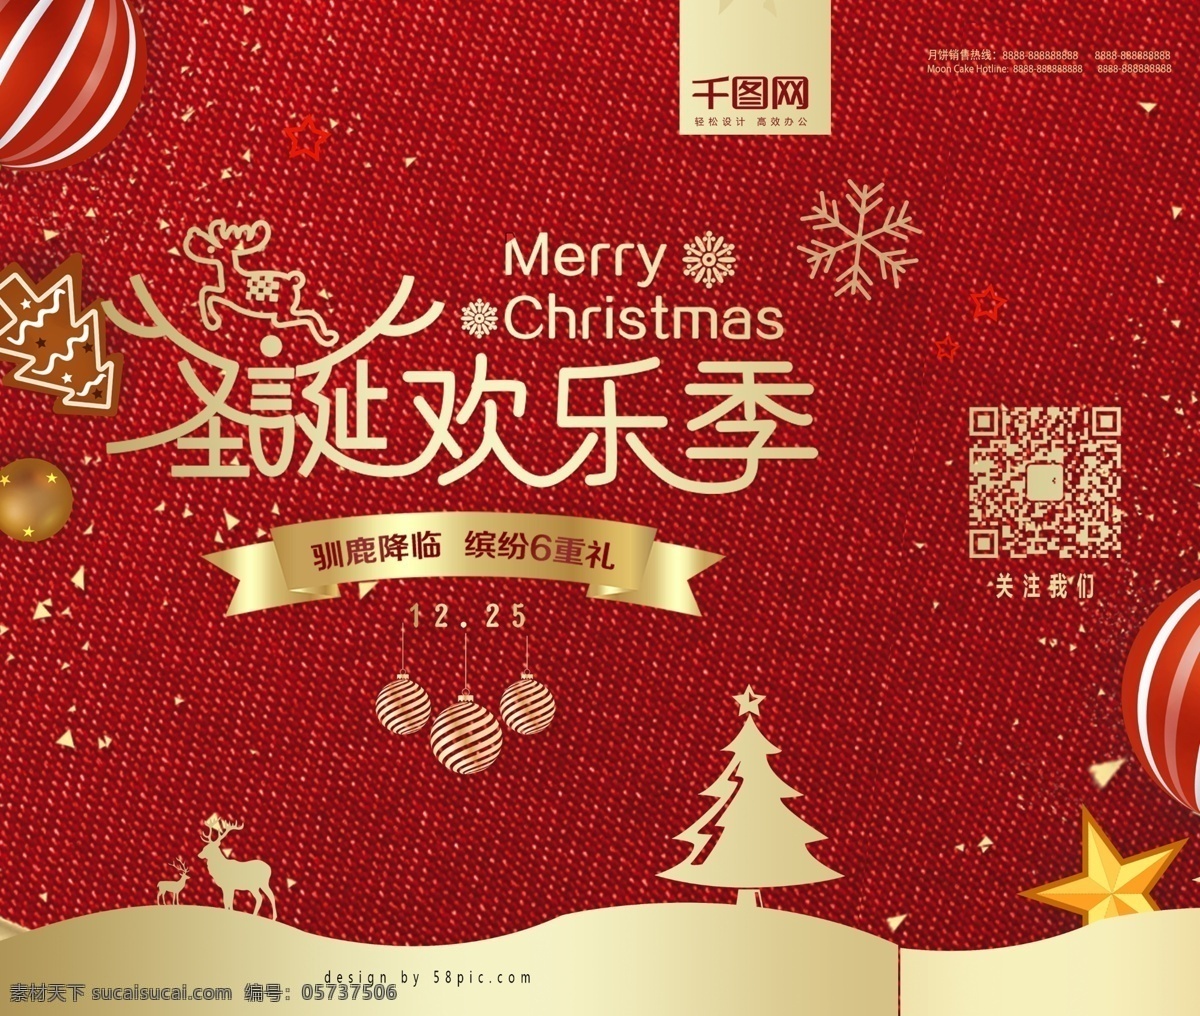 红色 简约 大气 圣诞礼品 礼物 手提袋 psd素材 简约大气 圣诞节 礼品礼物 包装设计 广告设计模版 圣诞树 麋鹿素材